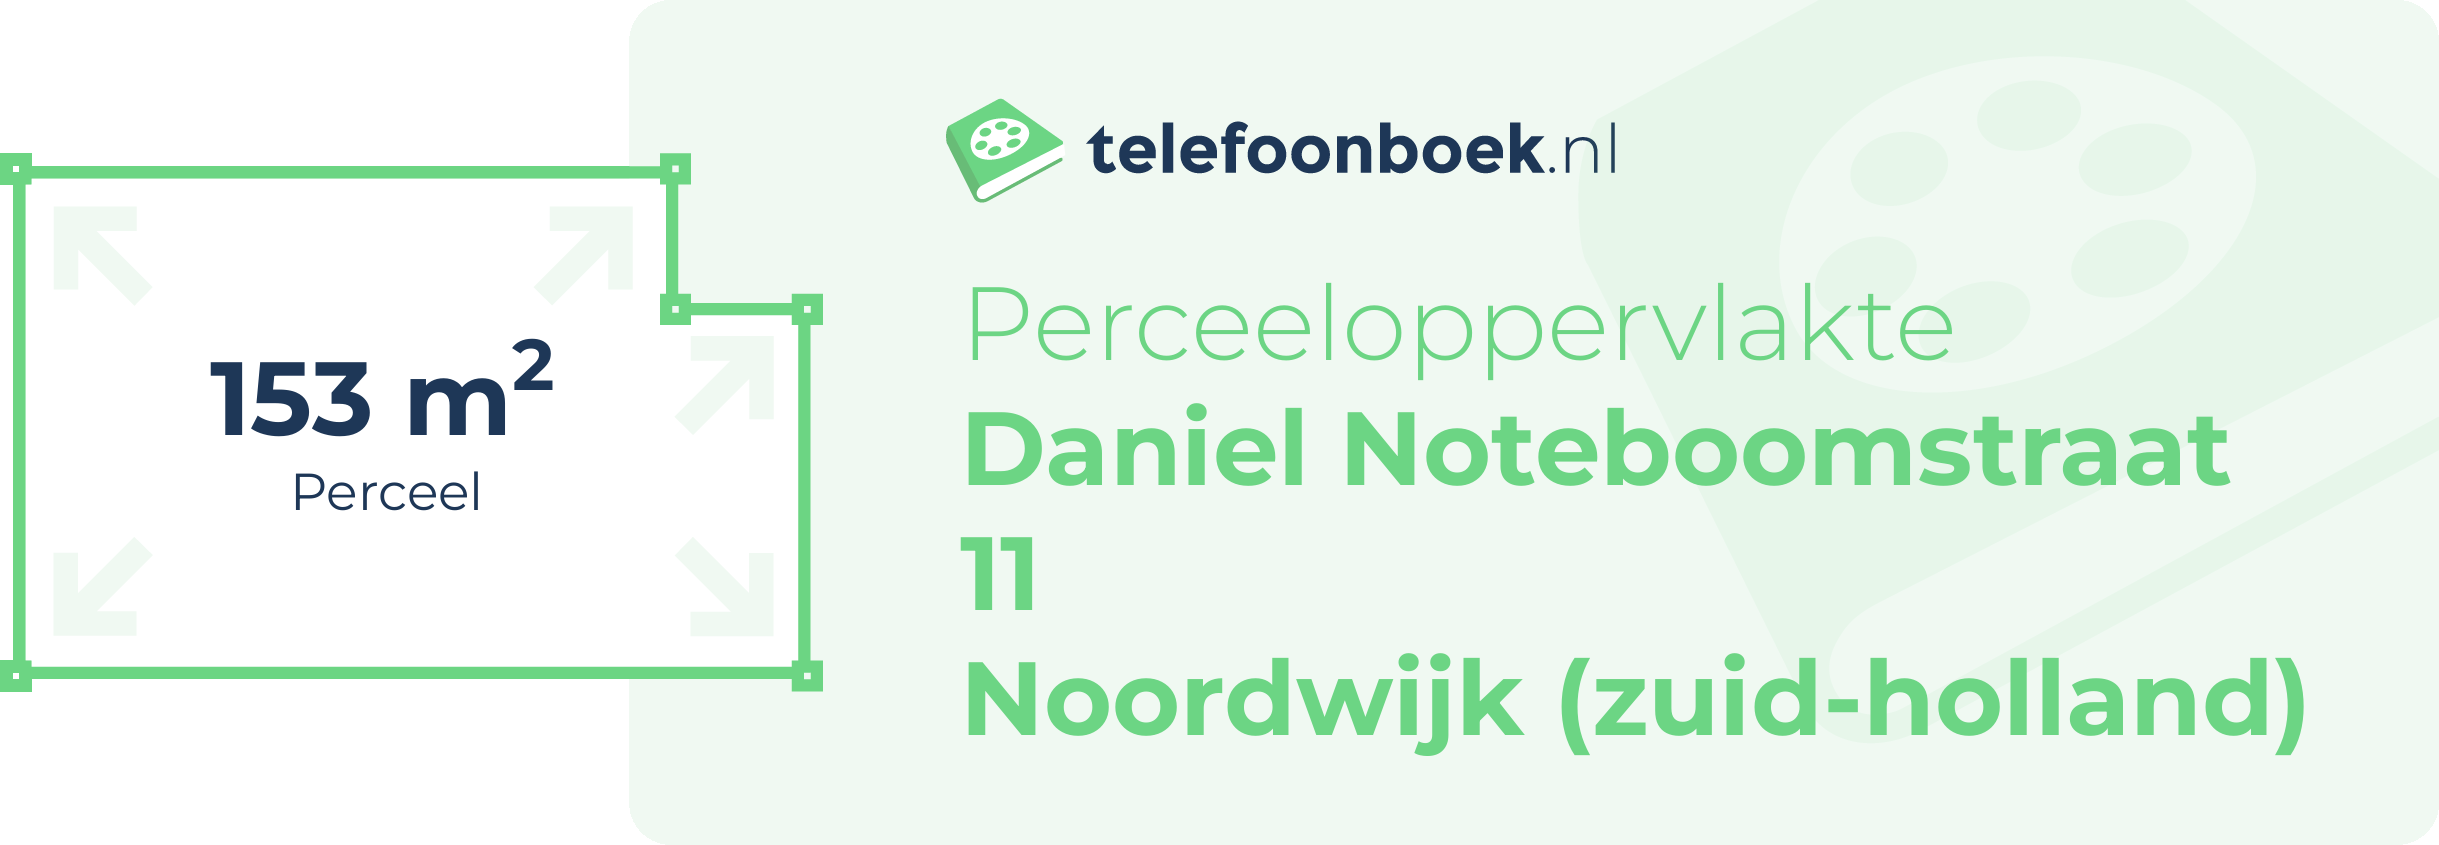 Perceeloppervlakte Daniel Noteboomstraat 11 Noordwijk (Zuid-Holland)